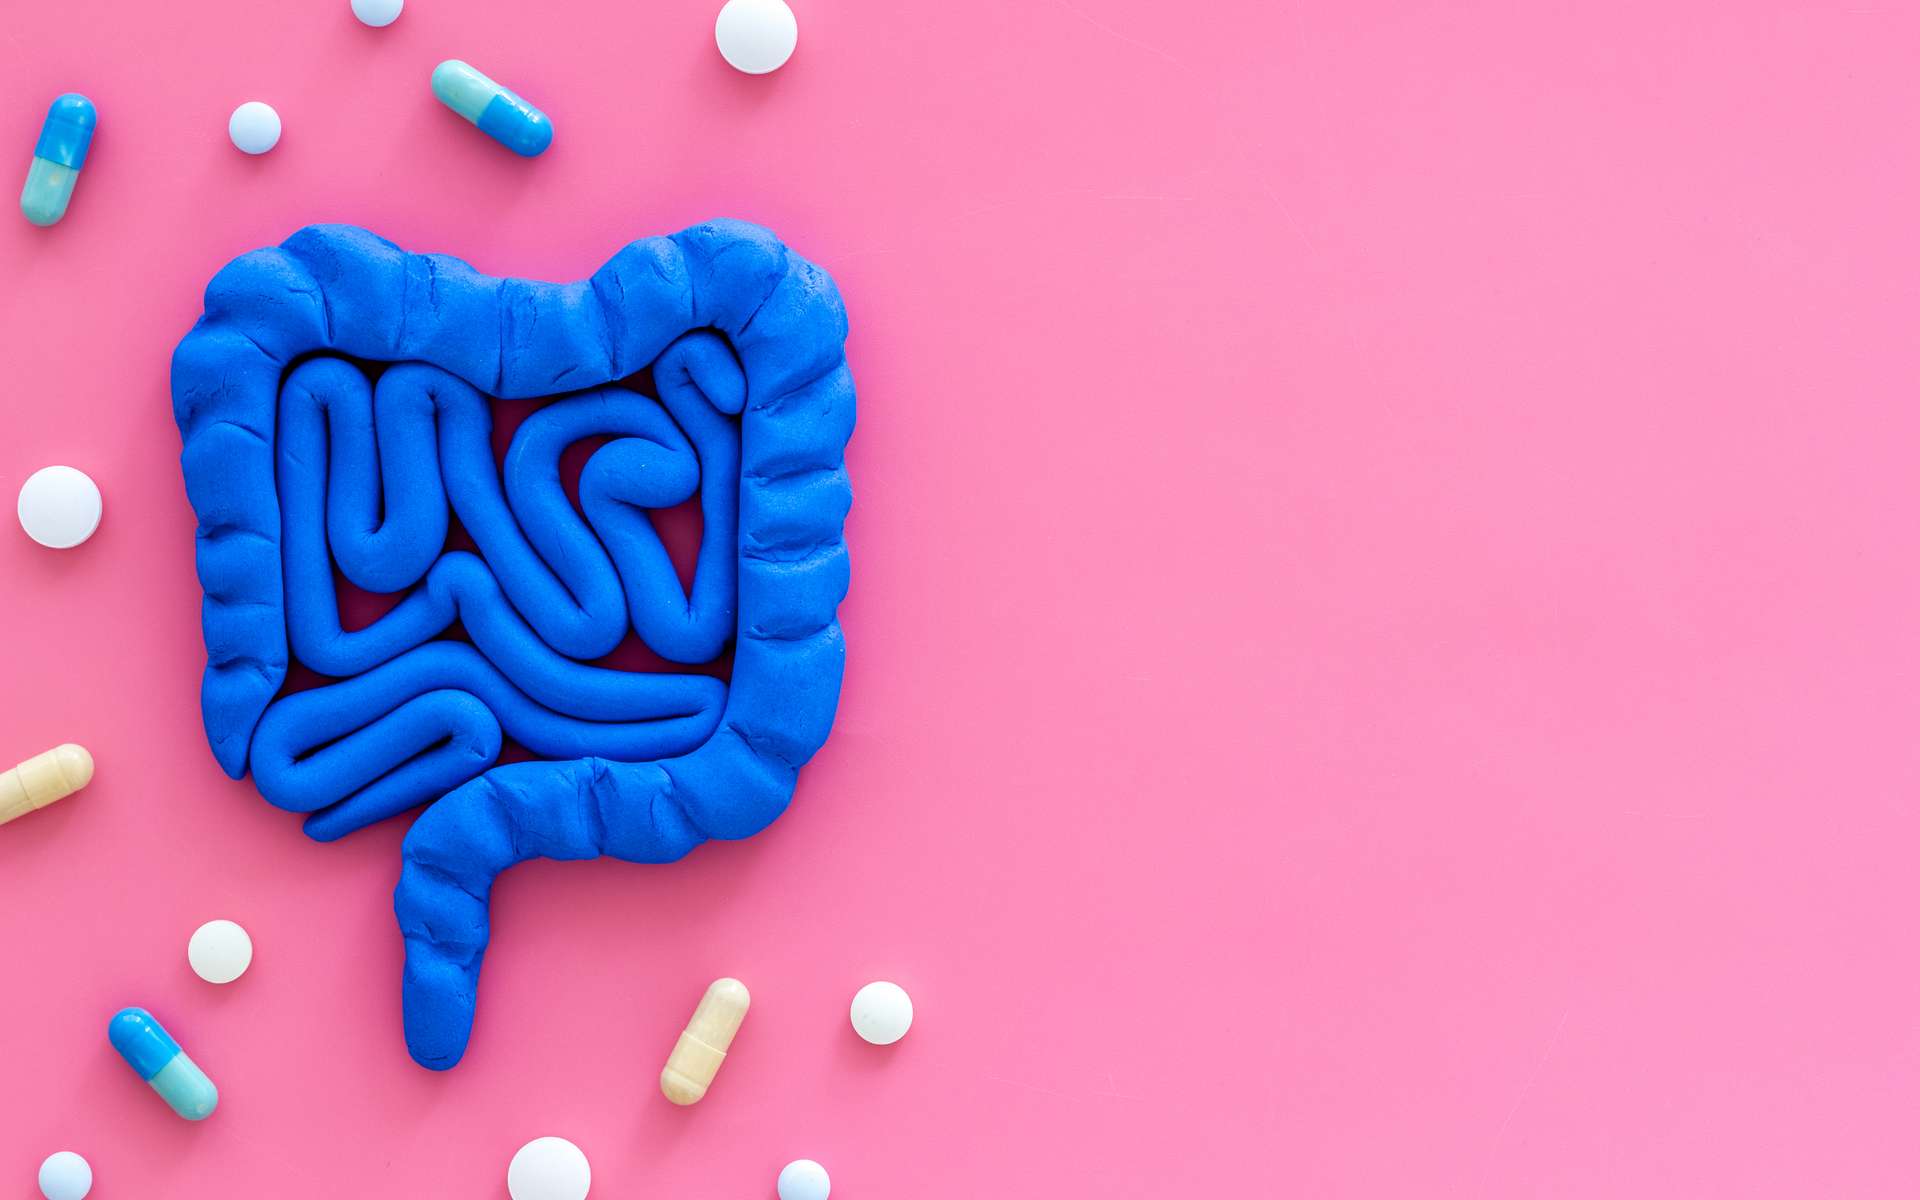 Les médicaments interférant avec des transporteurs intestinaux de nutriments peuvent avoir des effets secondaires sérieux. © 9dreamstudio, Adobe Stock